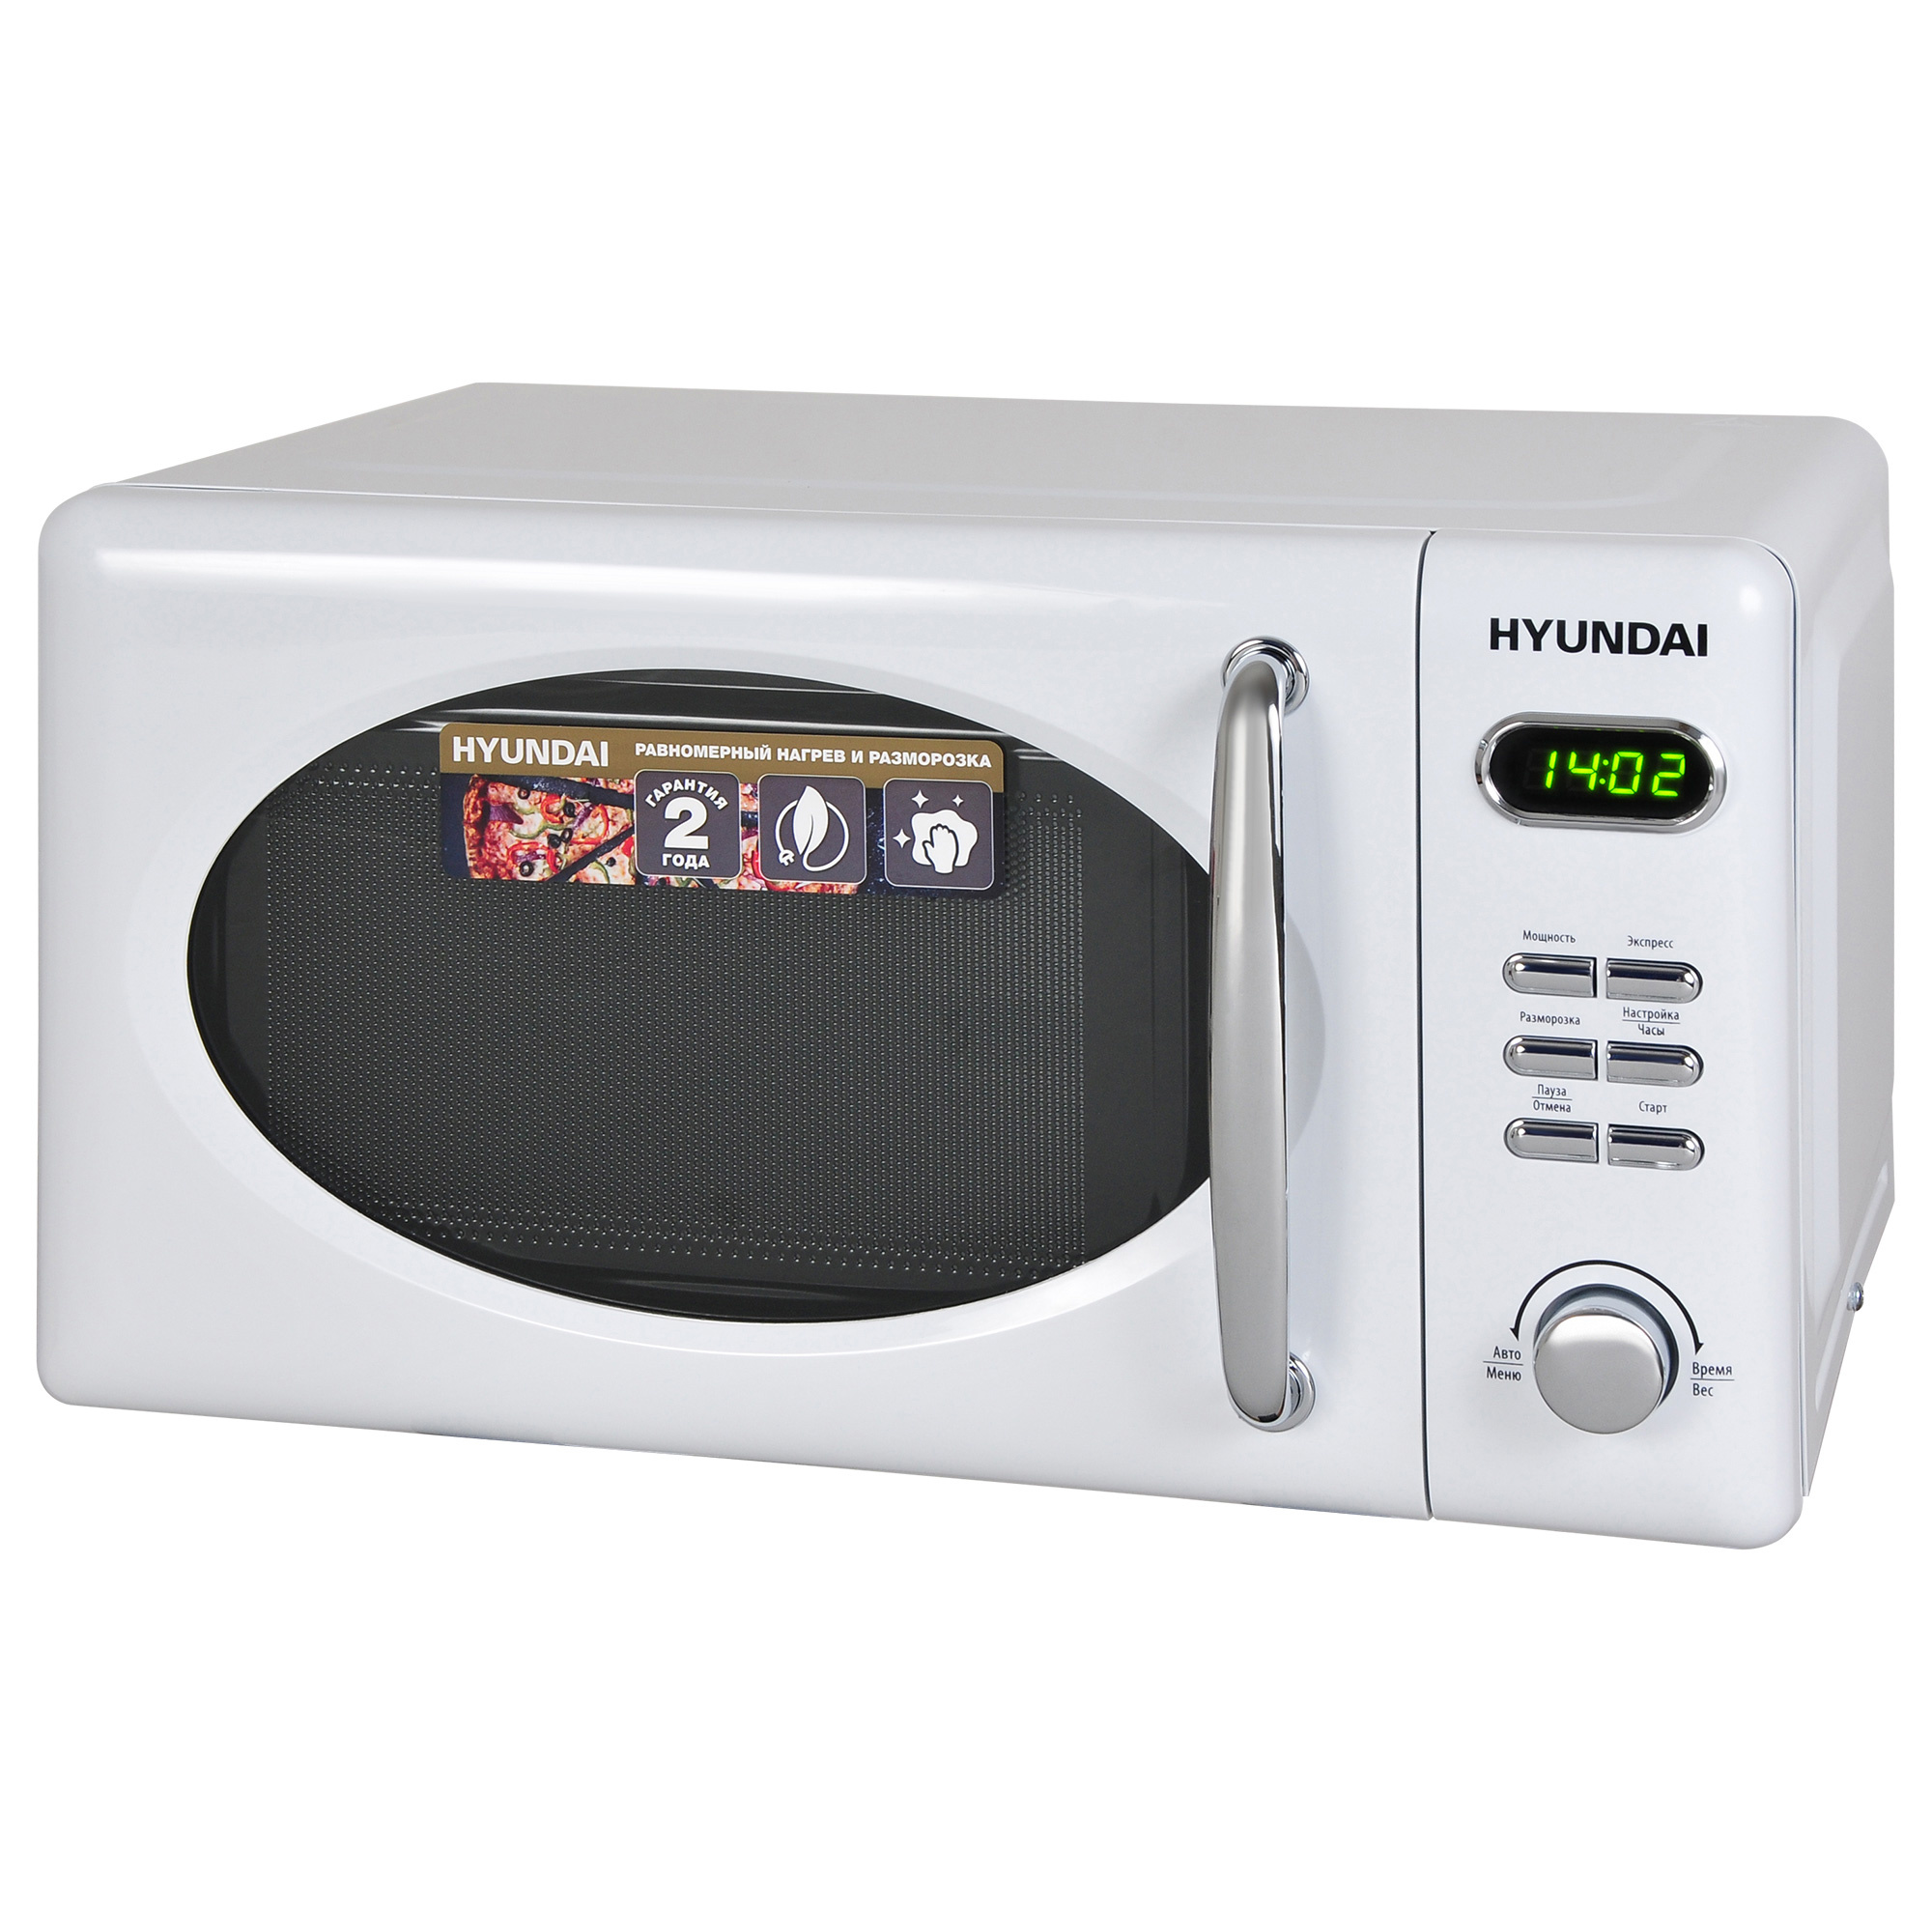 Микроволновая печь hyundai купить. Микроволновая печь - СВЧ Hyundai HYM-d2072. Микроволновая печь Hyundai HYM-m2038. Микроволновая печь Hyundai HYM-m2002. Микроволновая печь Hyundai HYM-d2072 белый.